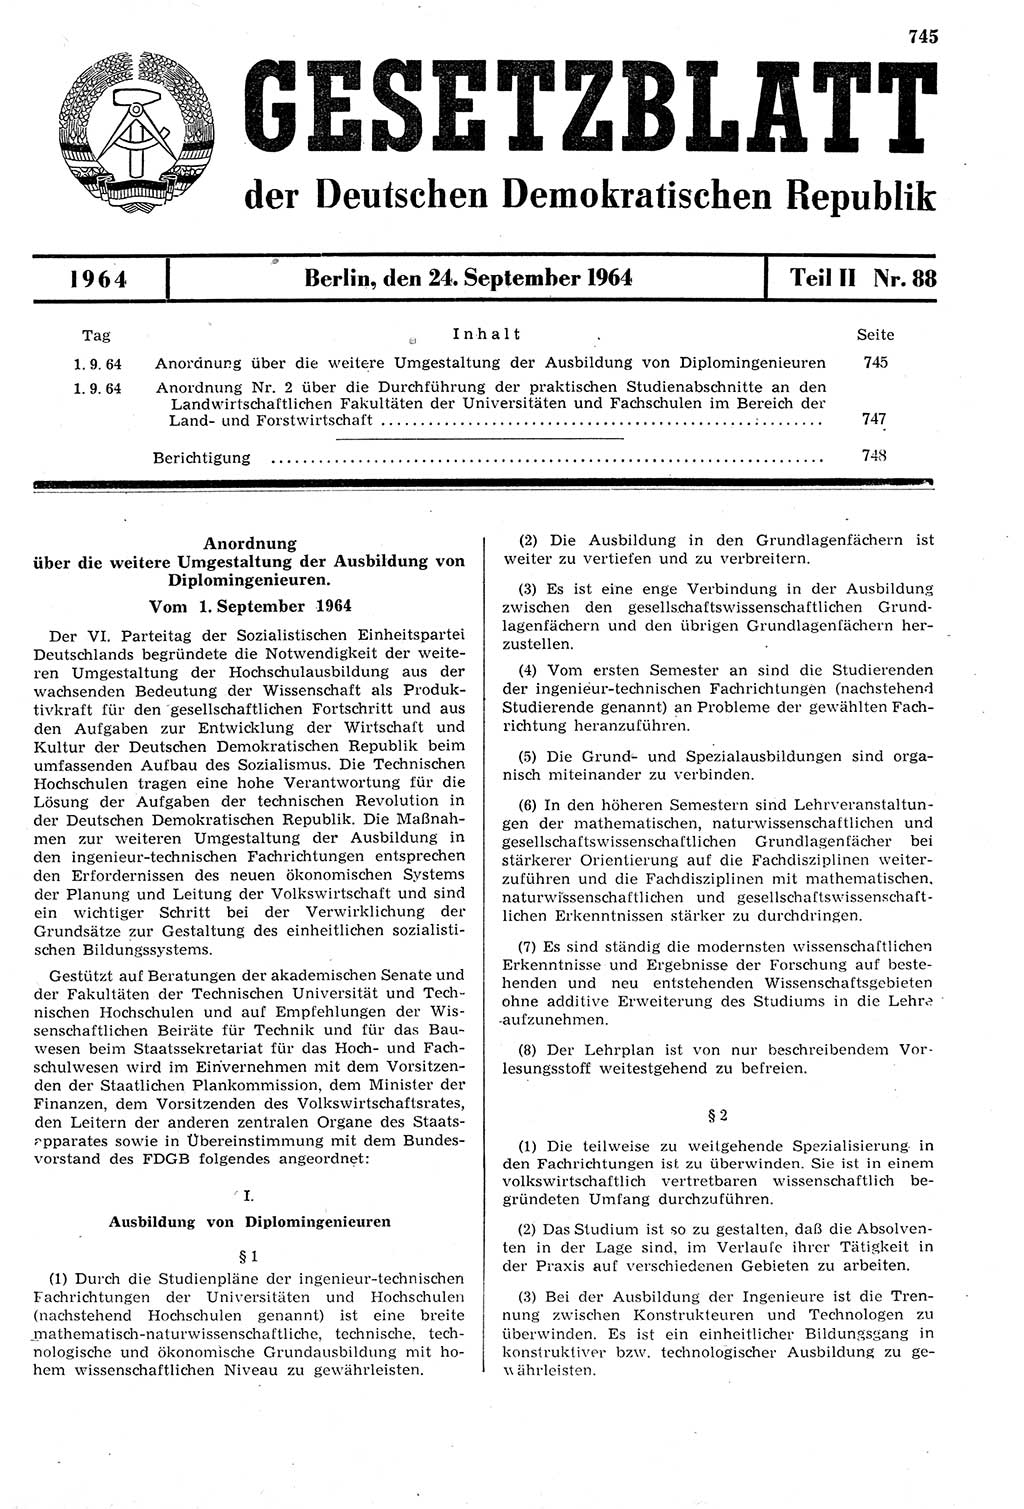 Gesetzblatt (GBl.) der Deutschen Demokratischen Republik (DDR) Teil ⅠⅠ 1964, Seite 745 (GBl. DDR ⅠⅠ 1964, S. 745)